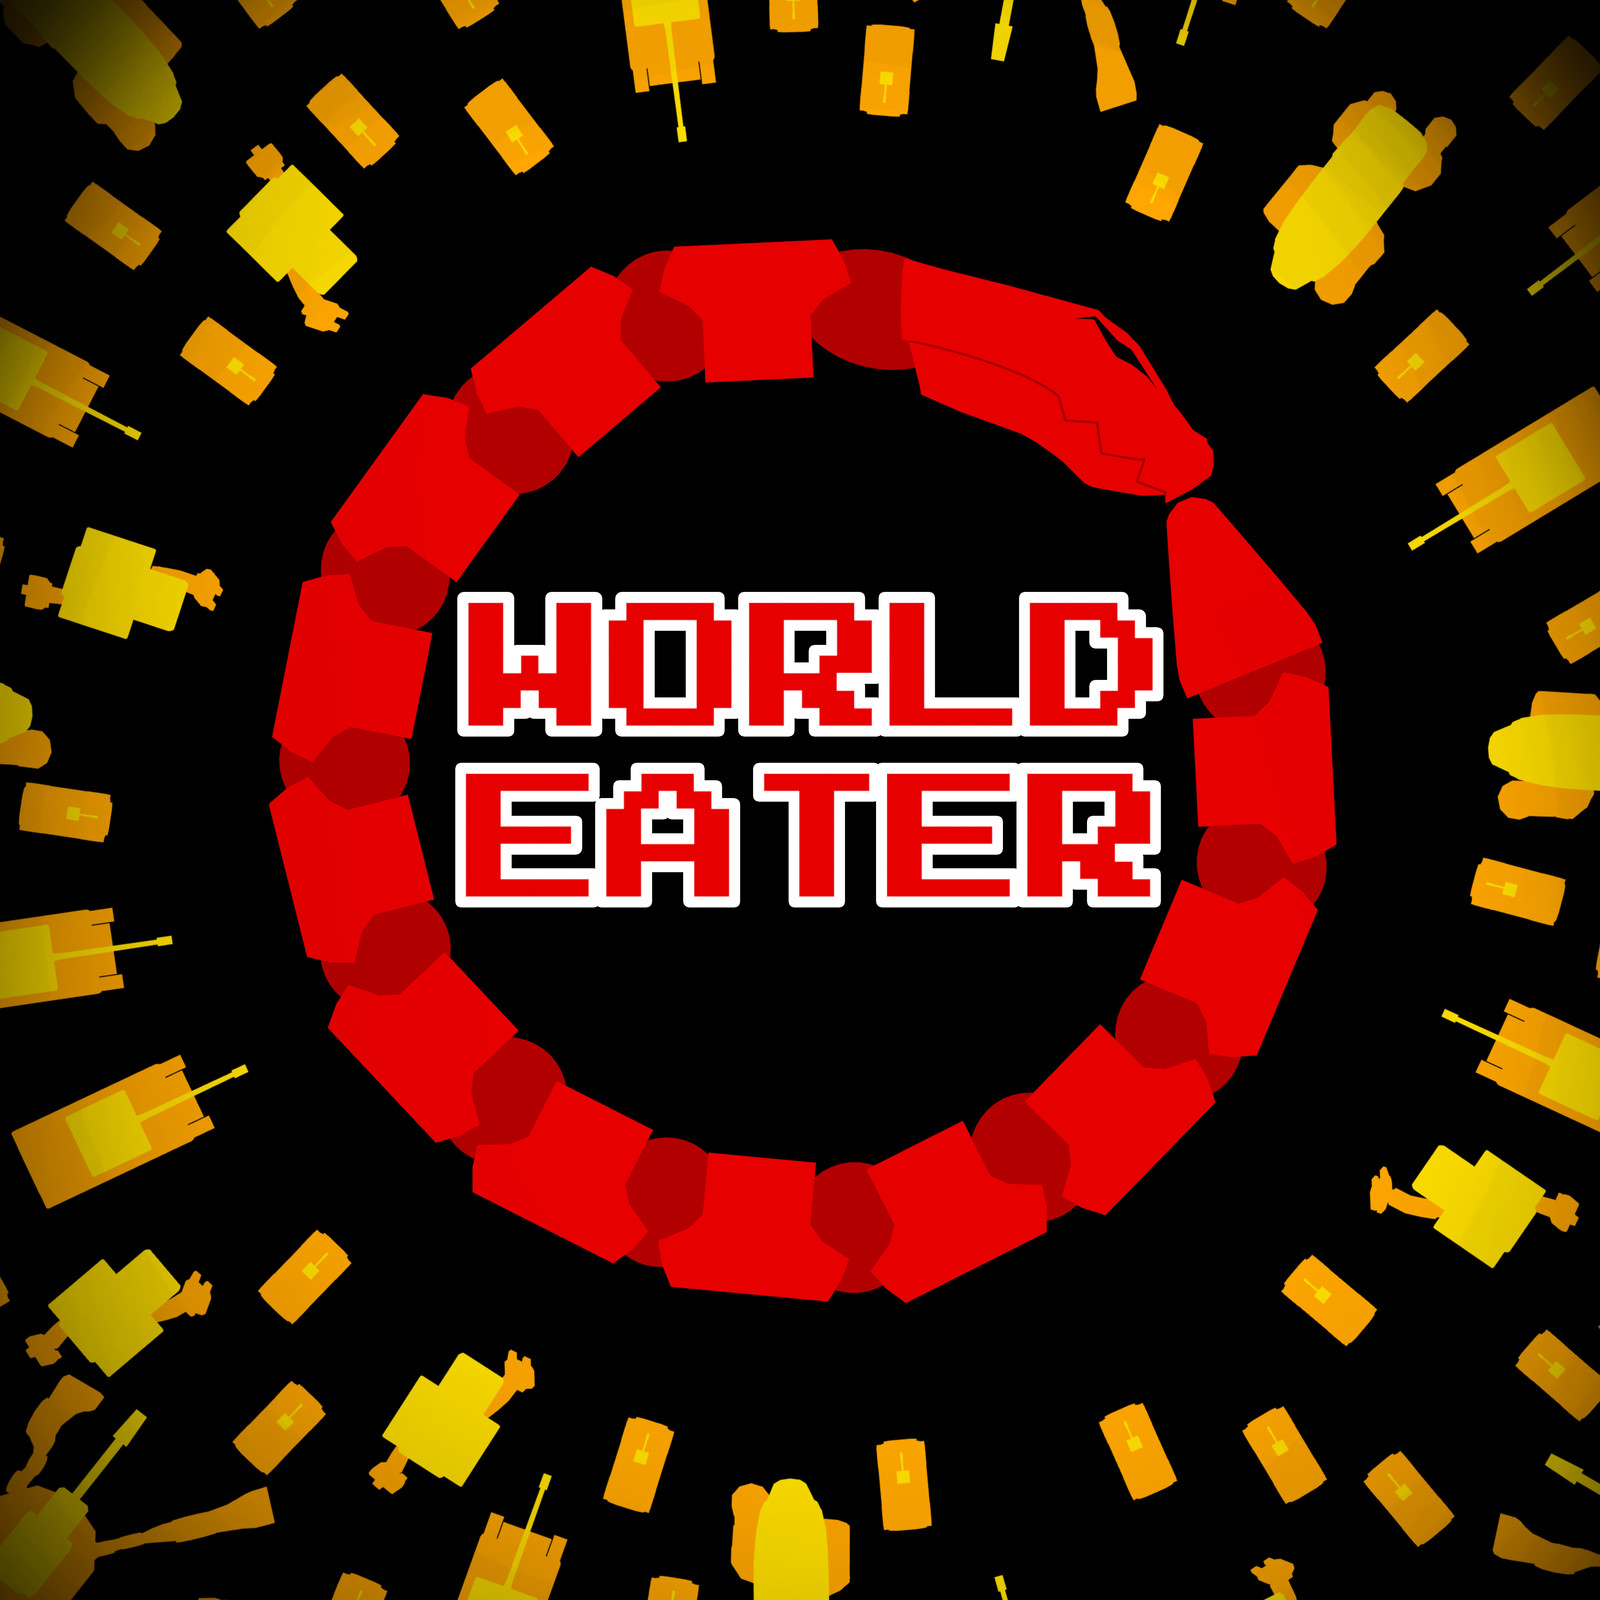 World Eater